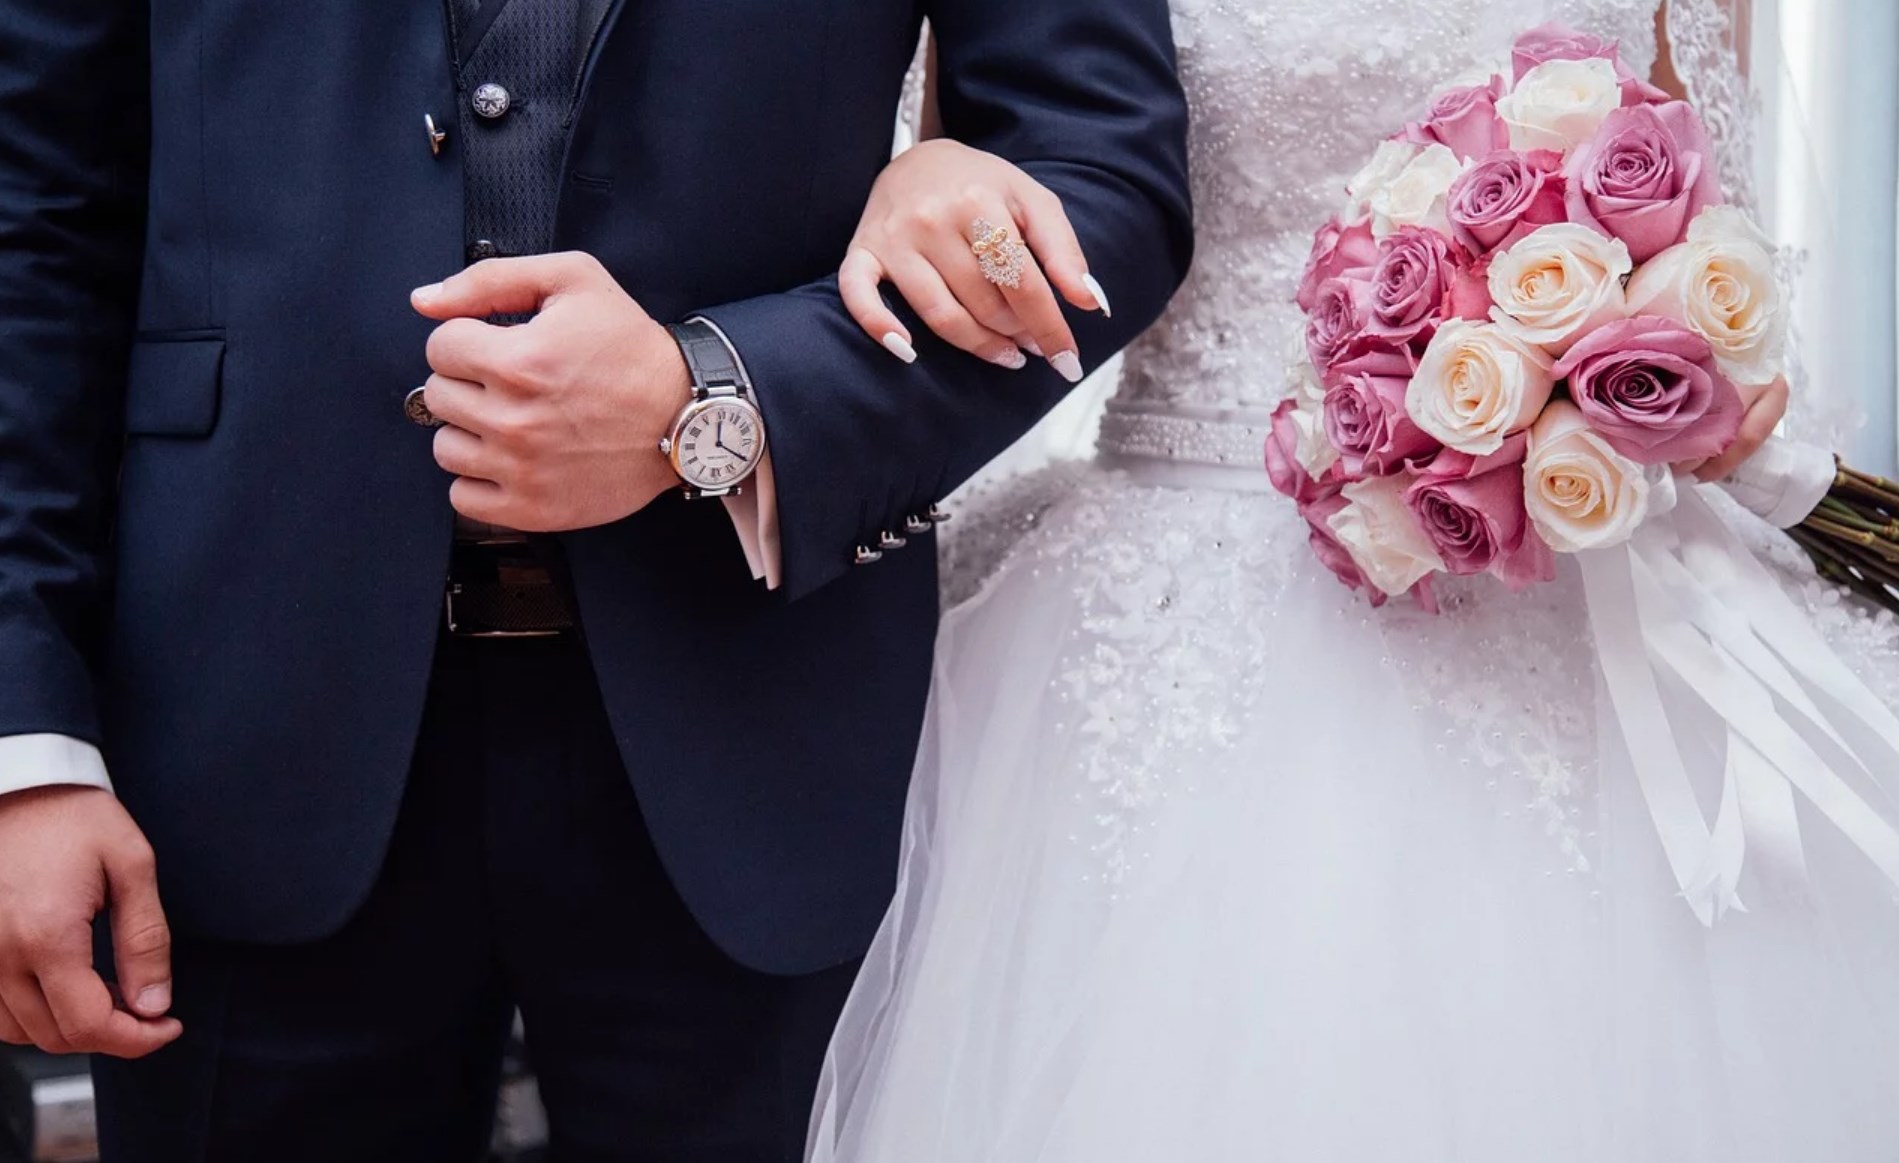 Составление плана проведения свадьбы: основные пункты и пошаговые действия